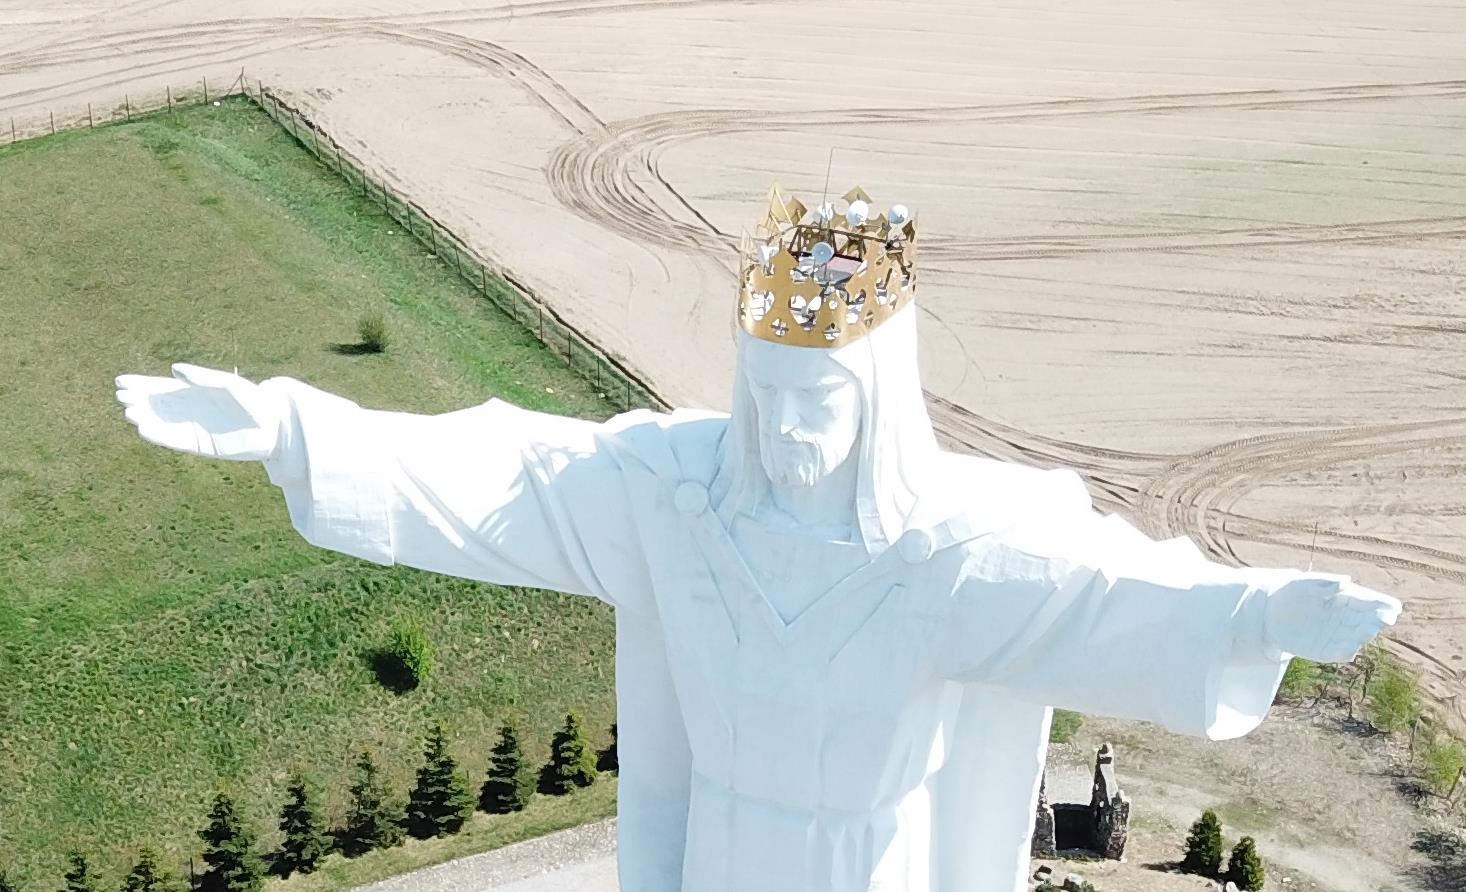 Из головы 36-метровой статуи Иисуса Христа в Польше снимут антенны для раздачи интернет-сигнала. 